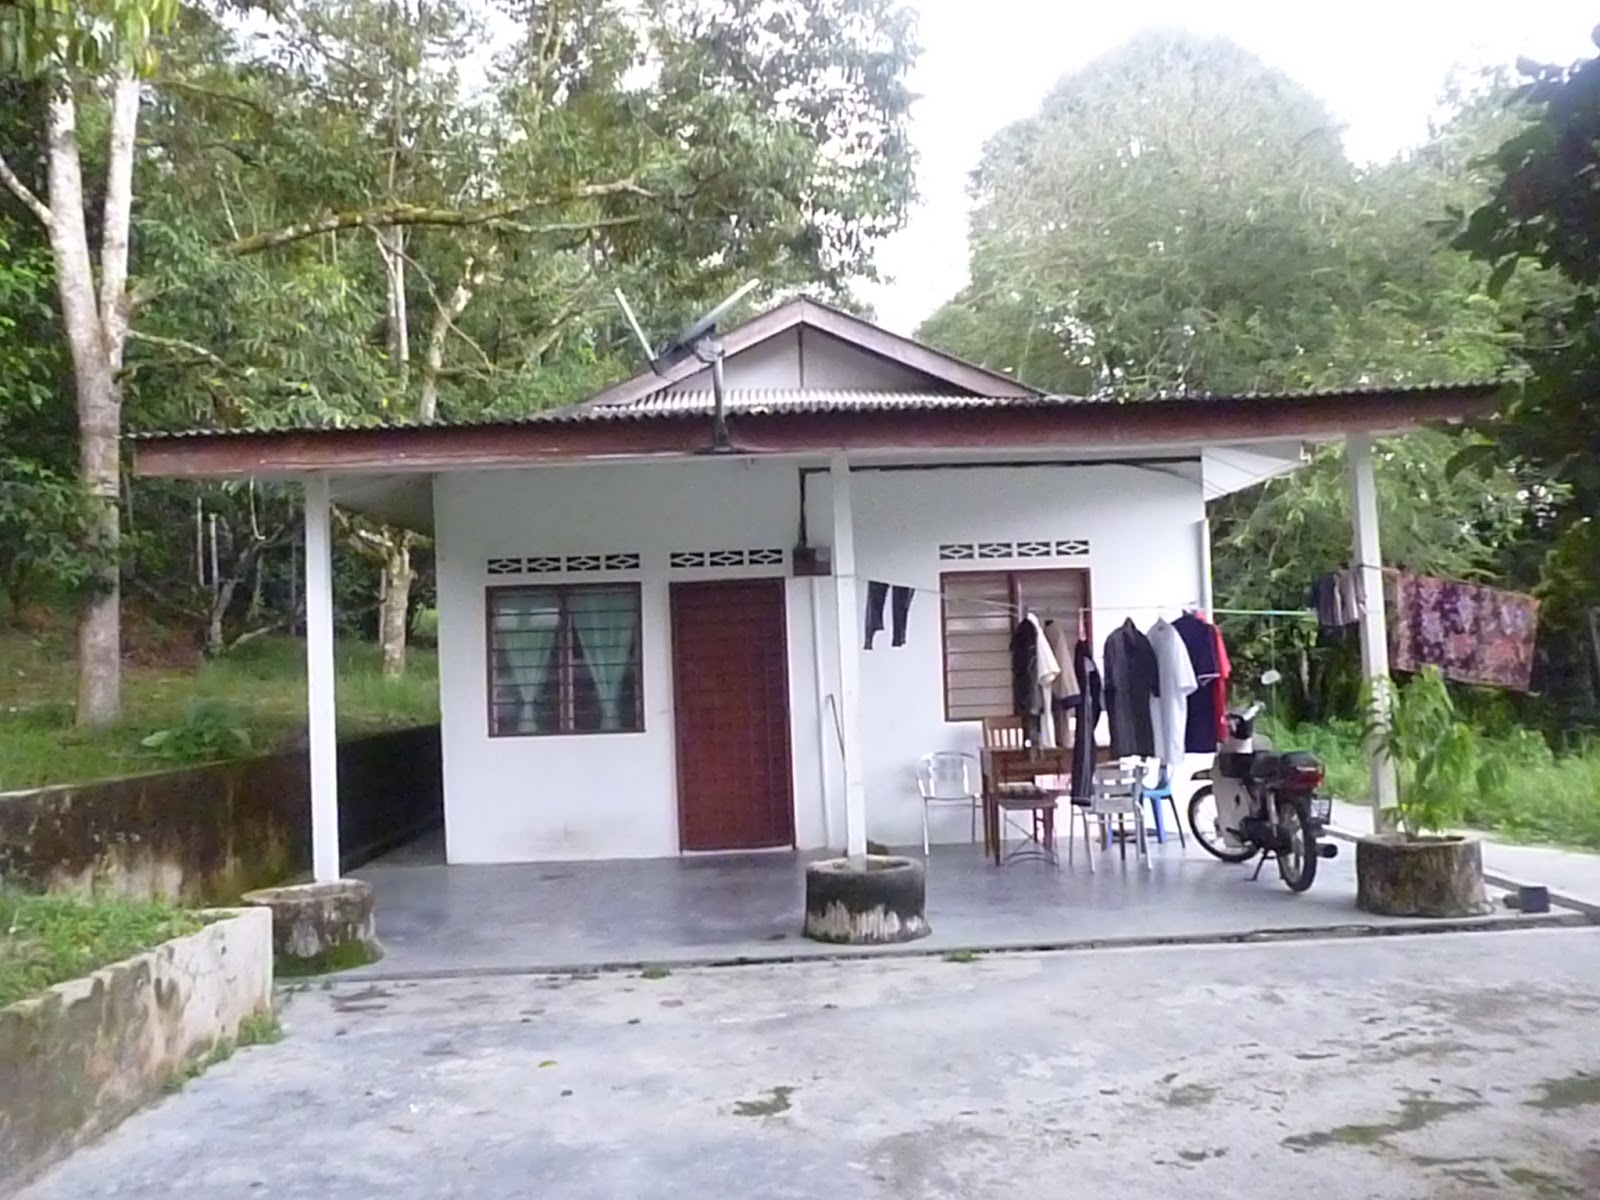 Tanah Dusun & Rumah Untuk Dijual~